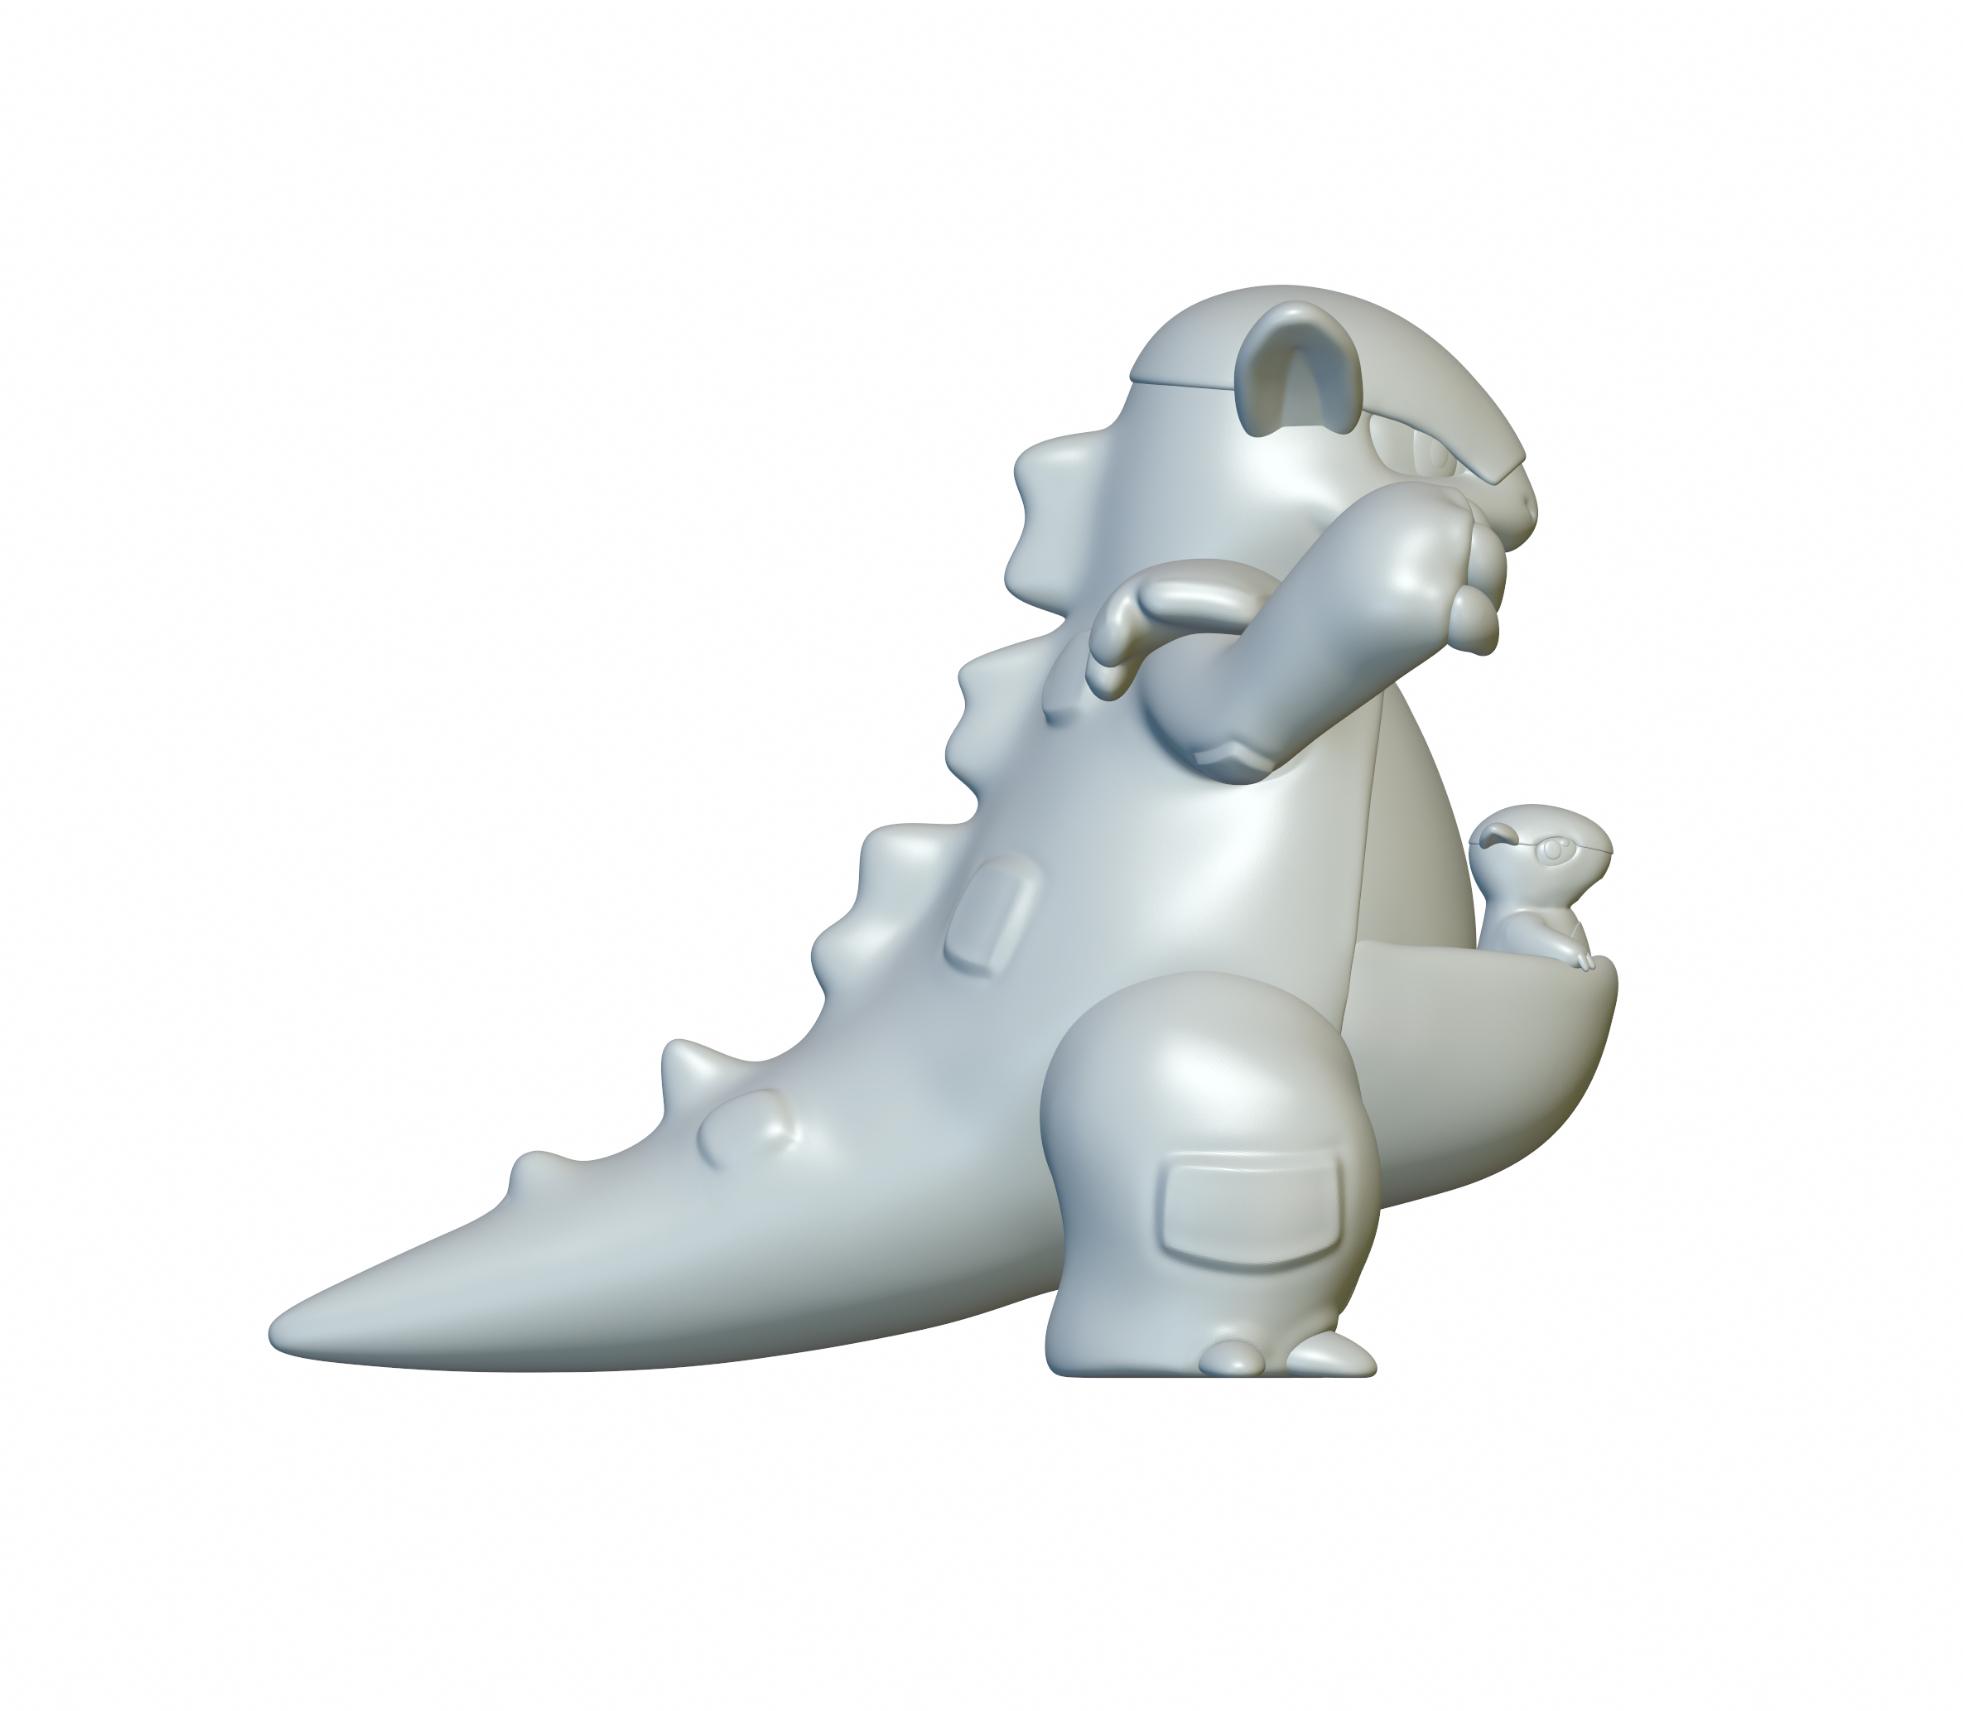 Pokemon Kangaskhan #115 - Optimized for 3D Printing 3d model